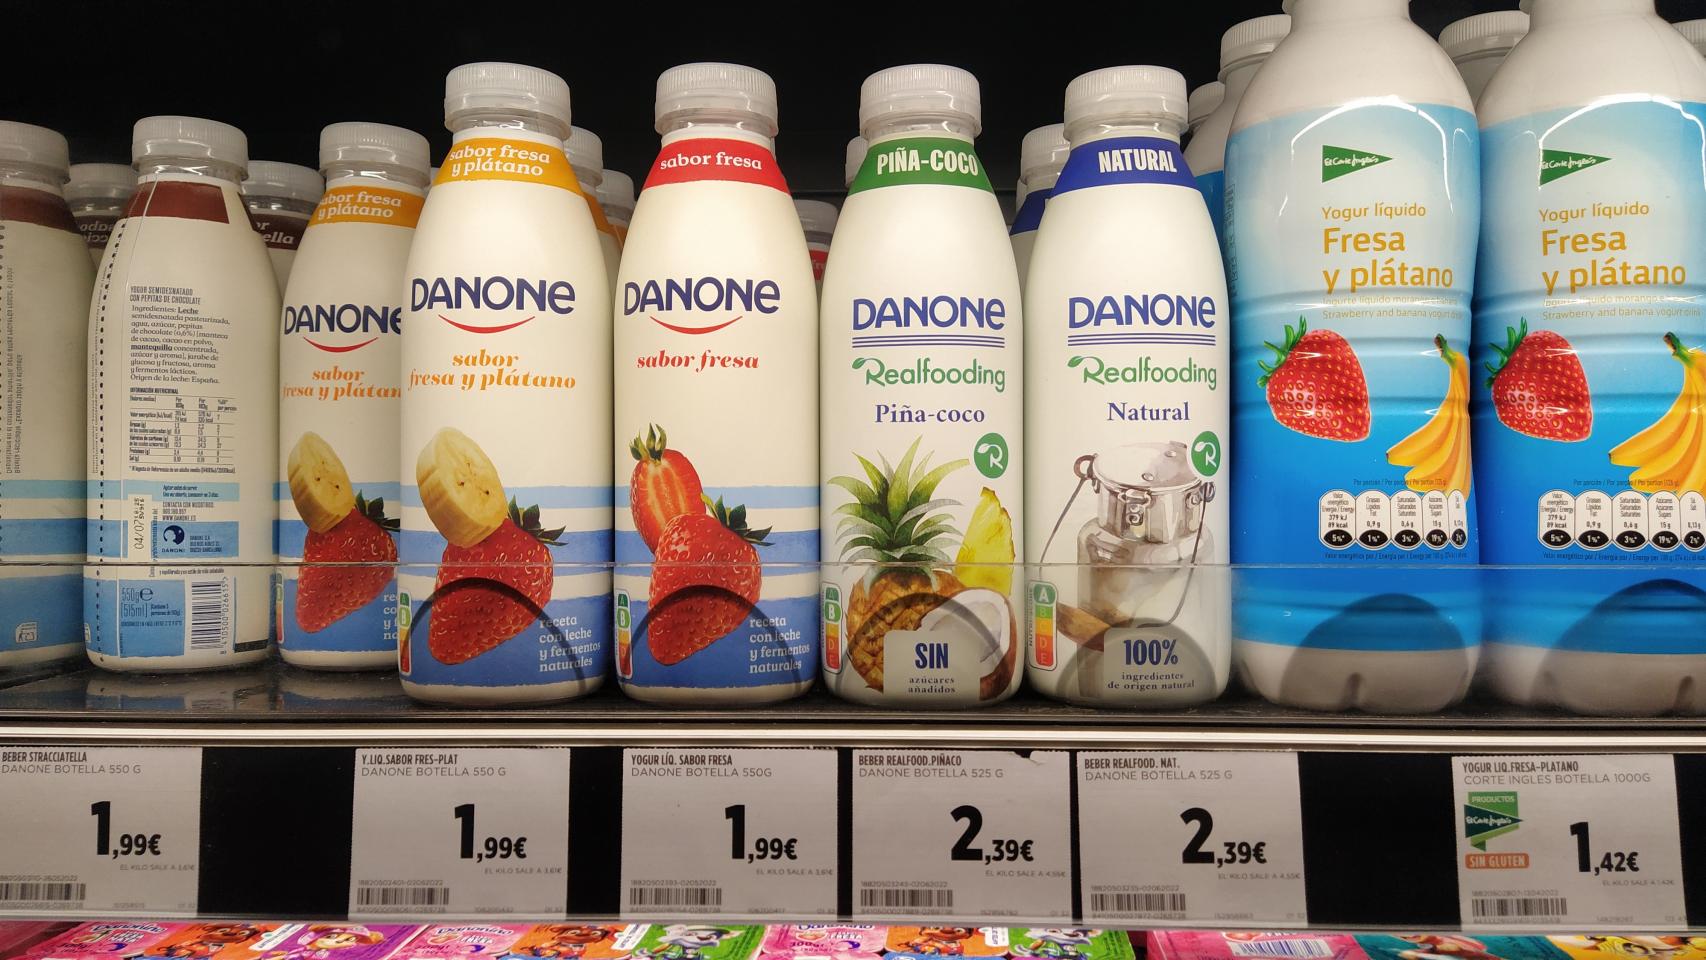 Yogur líquido Realfooding y yogur natural Danone: mismos